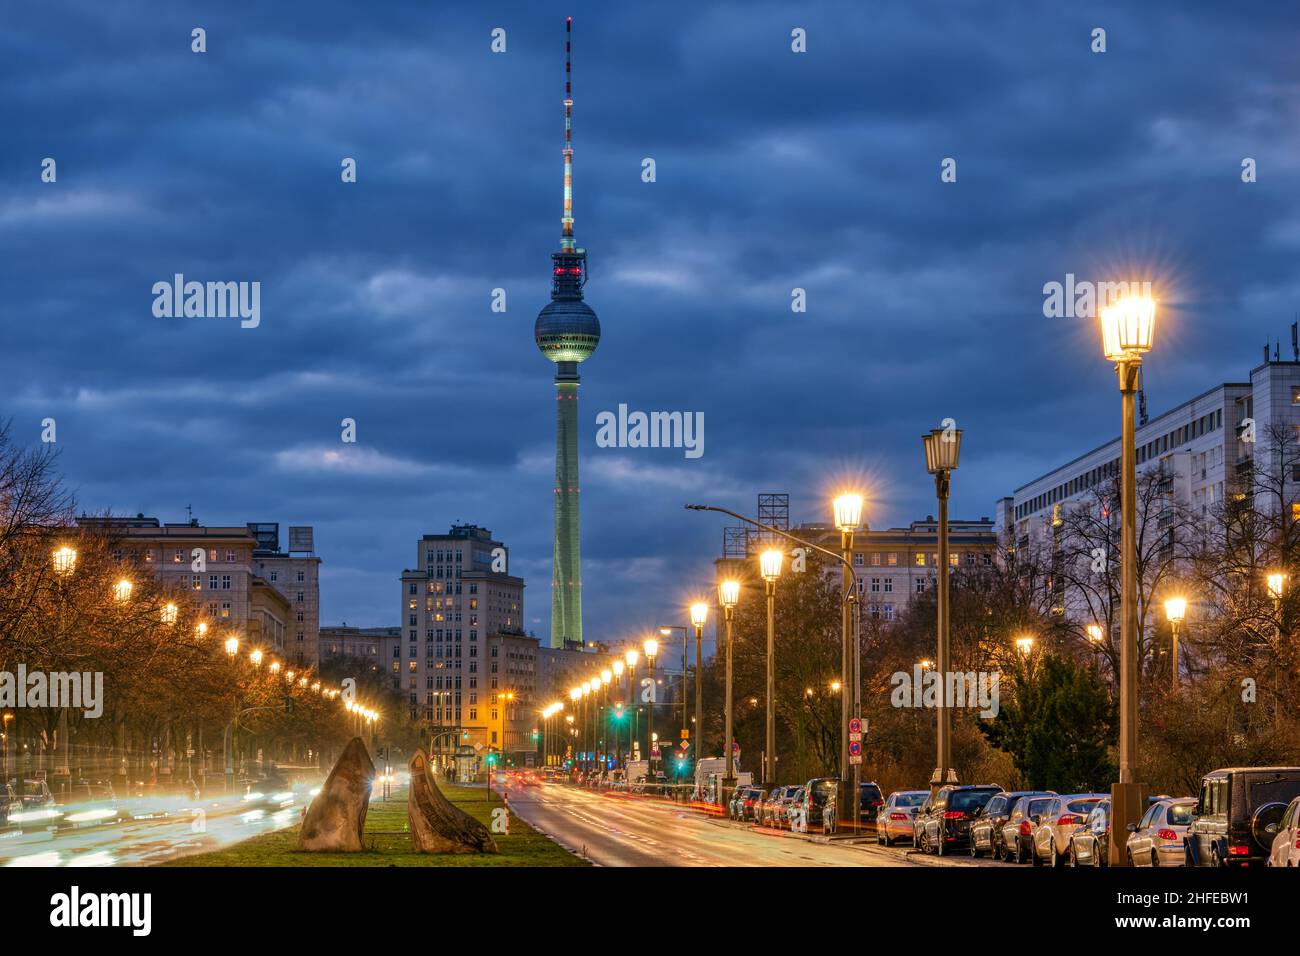 La famosa torre della televisione di Berlino con uno dei grandi viali di notte Foto Stock